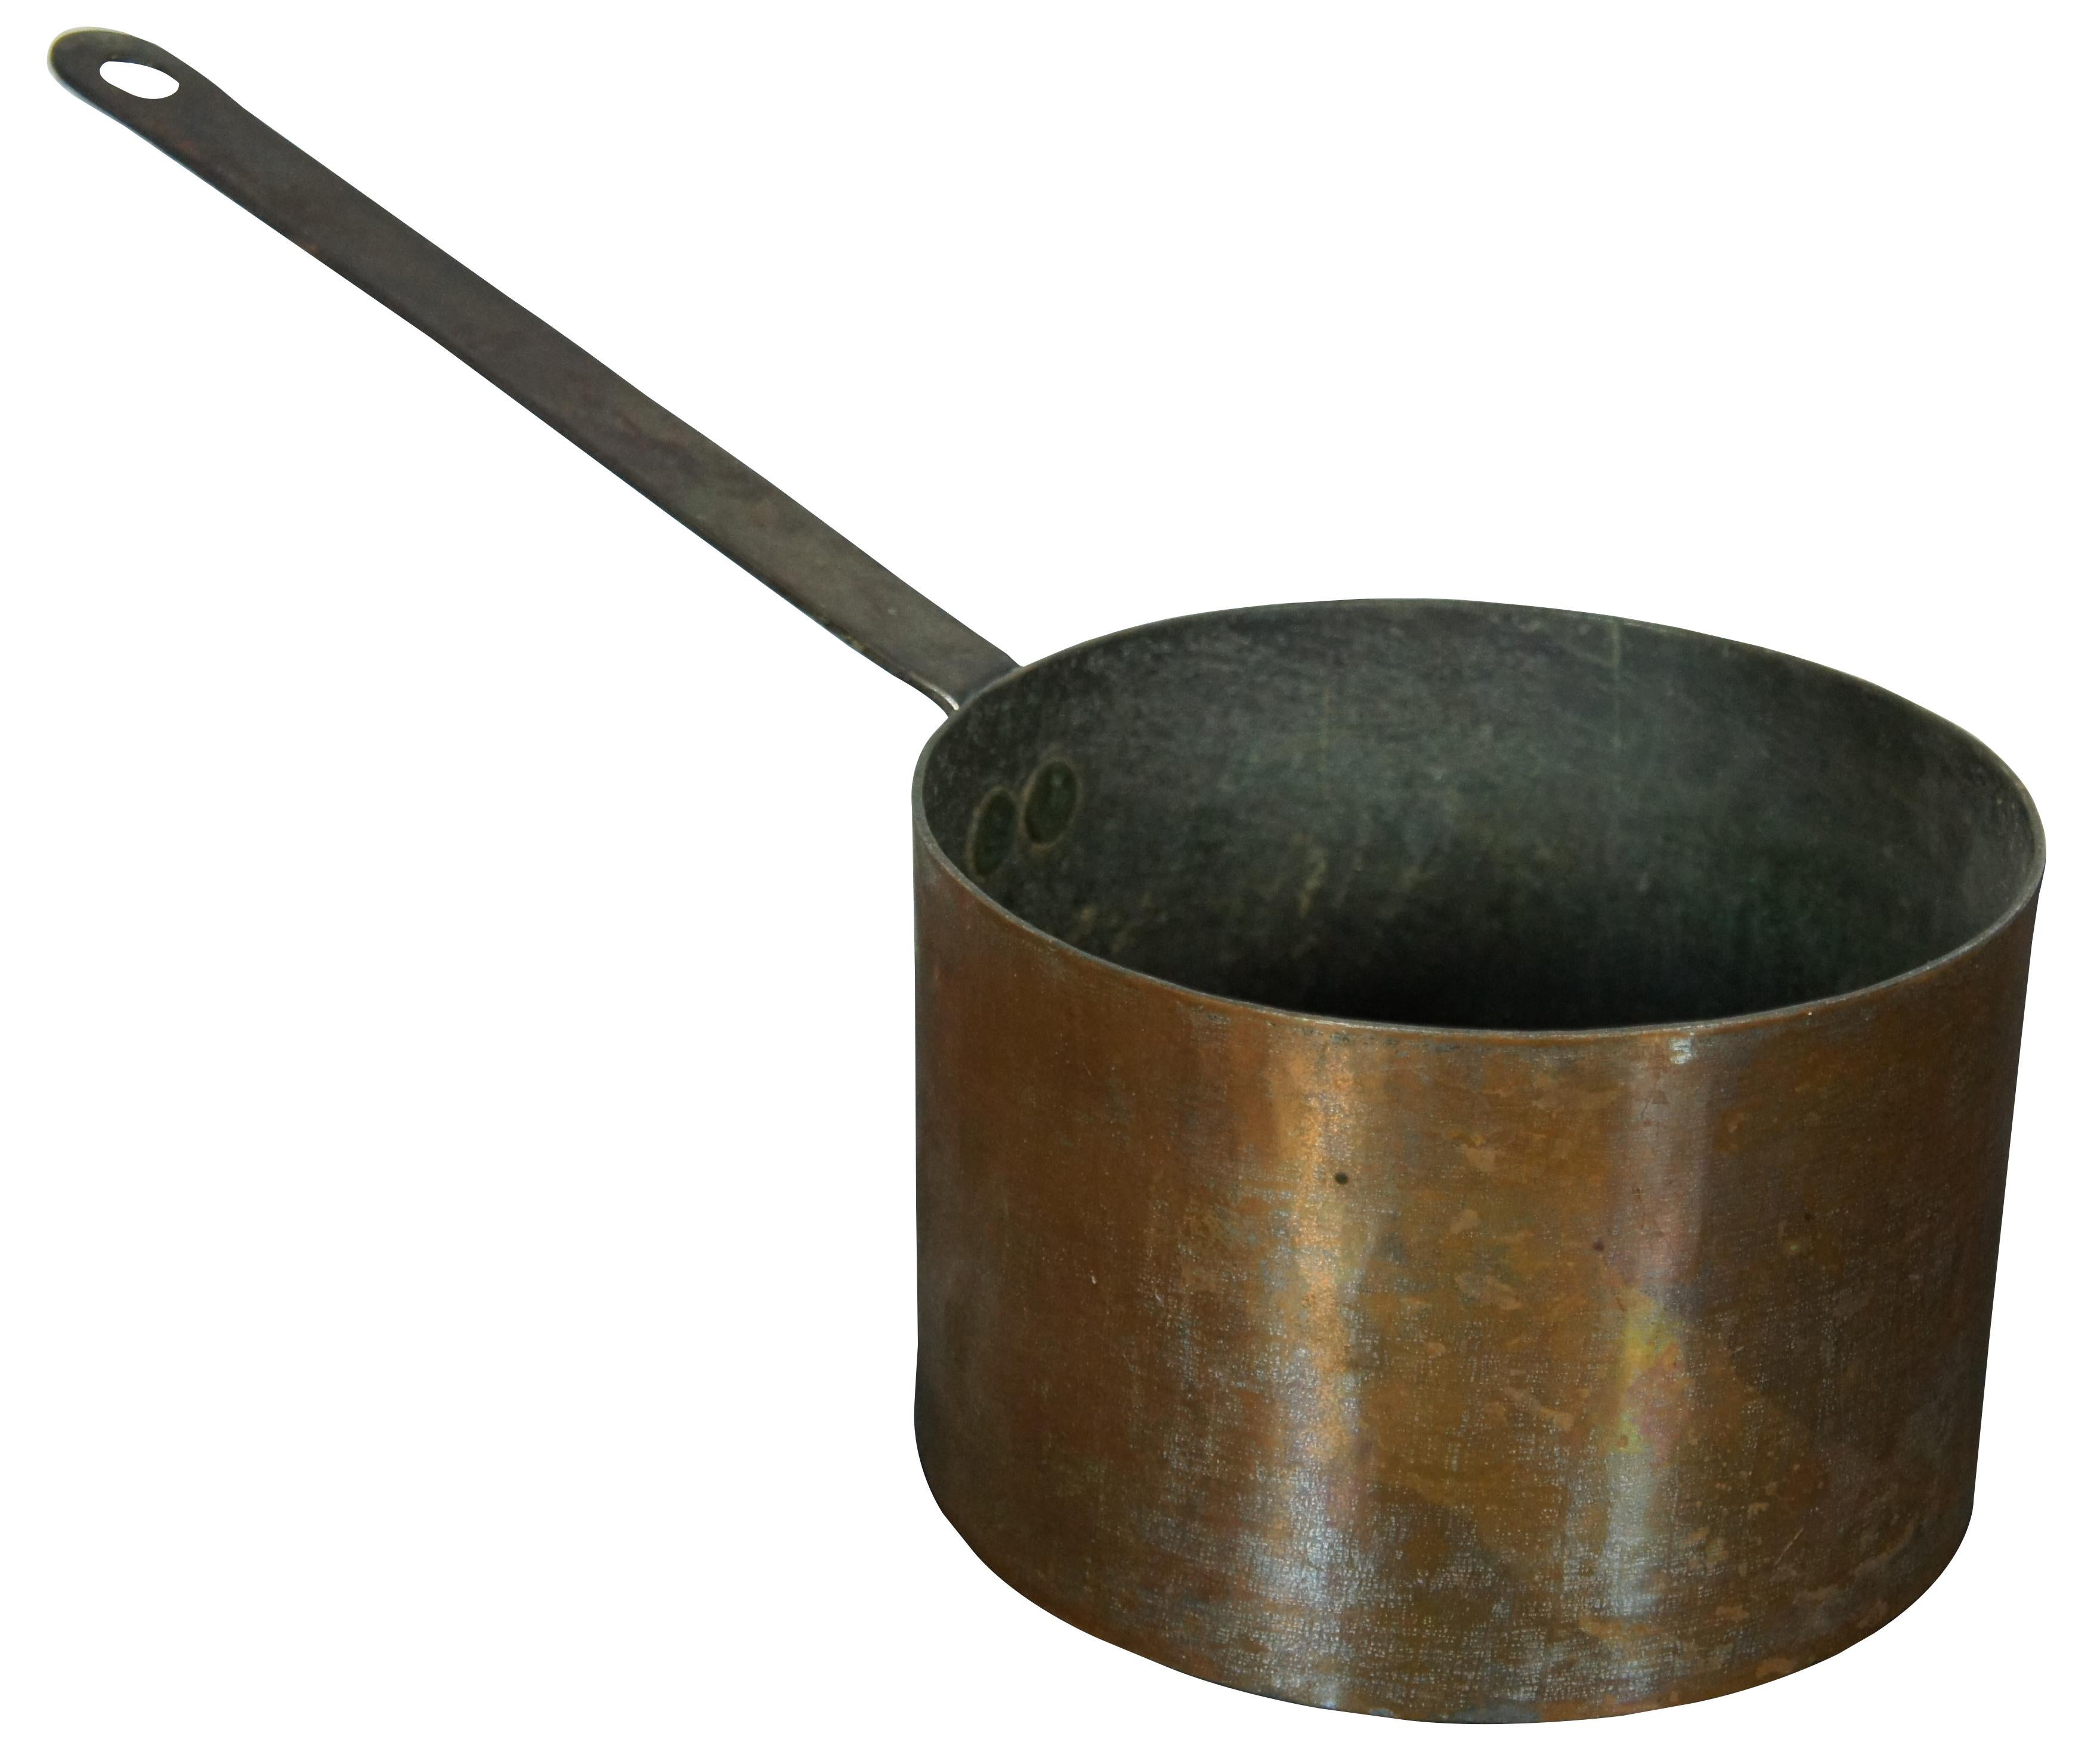 Saucière ancienne en cuivre avec poignée en fer ; probablement marquée d'un M à la base de la poignée.

Mesures : 15.5